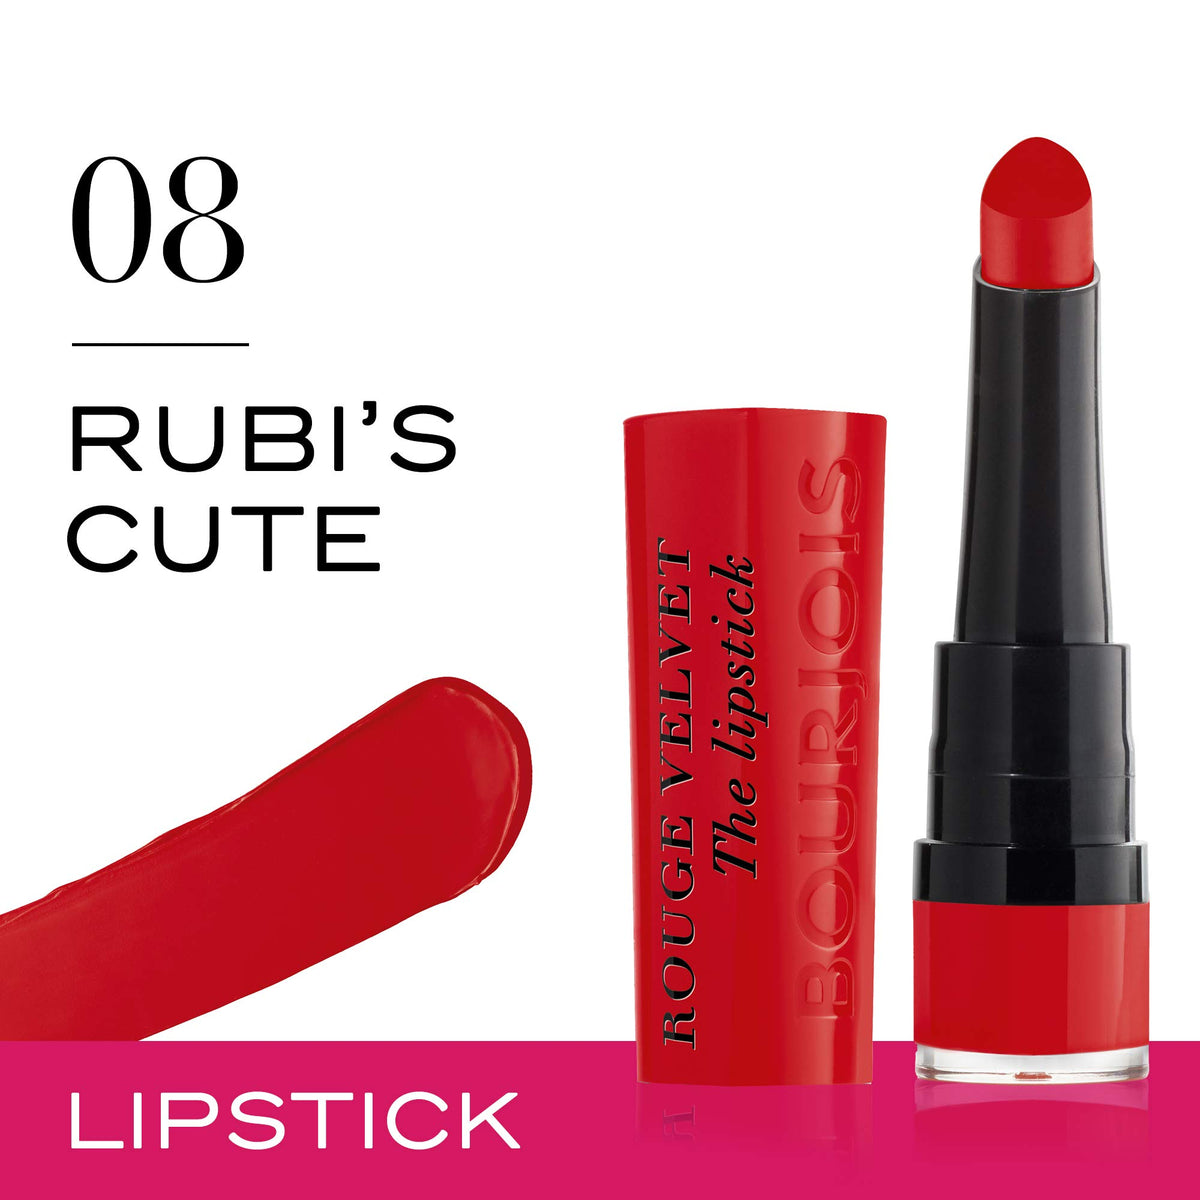 Bourjois Rouge Velvet The Lipstick - 08 Rubi’s Cute